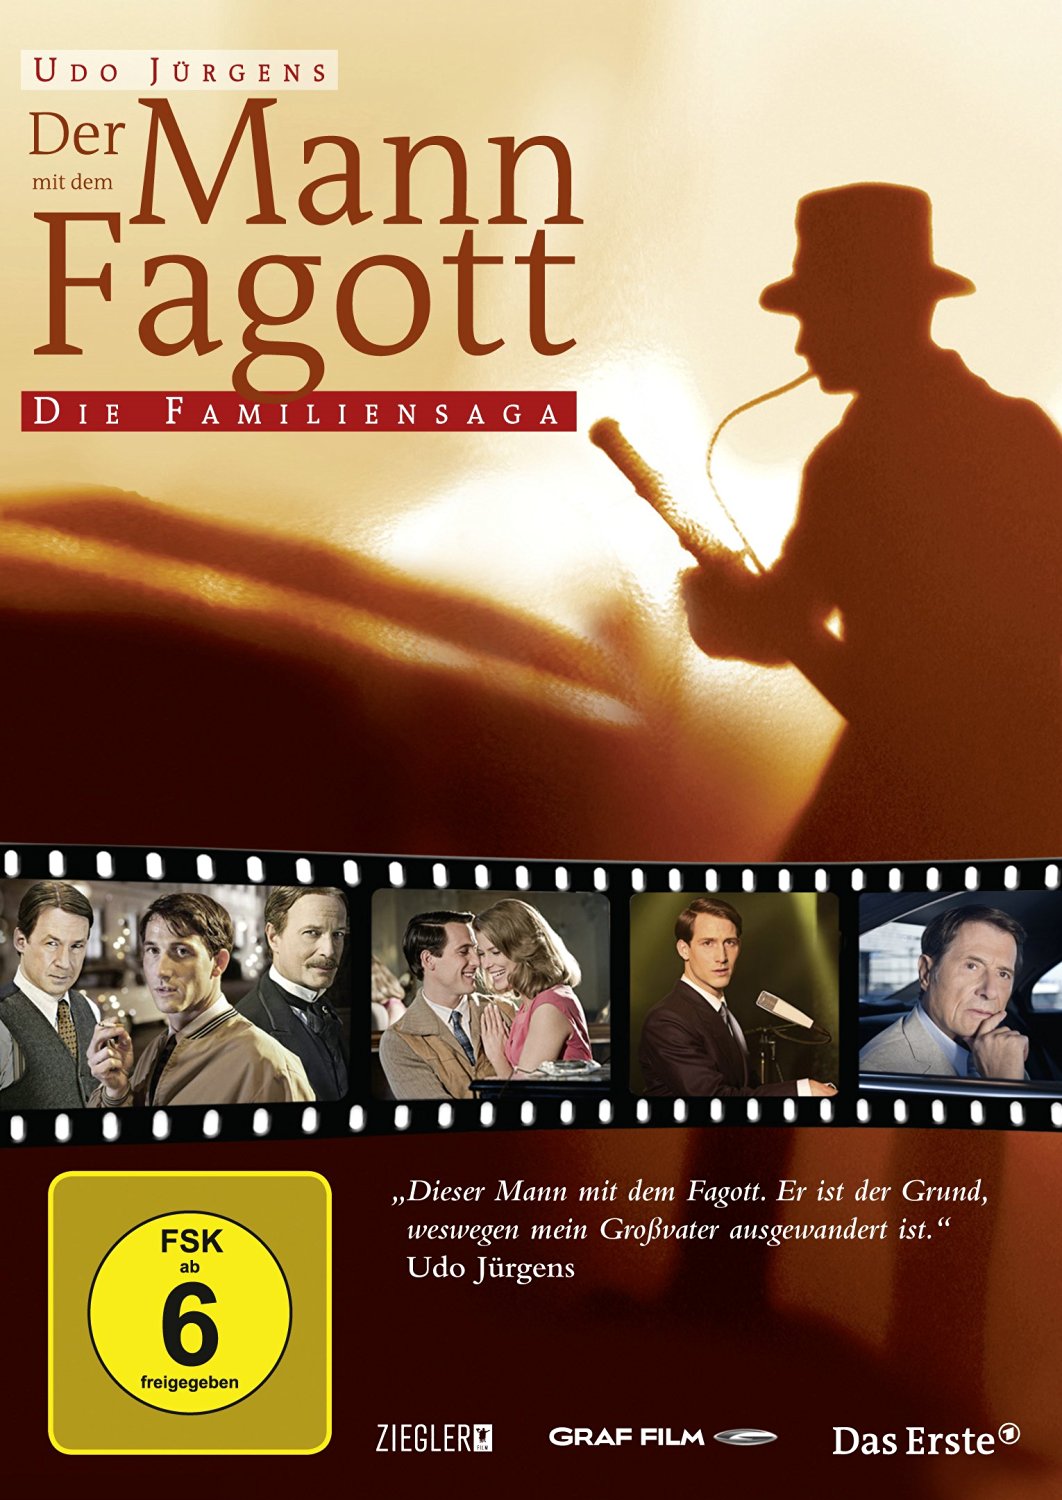 Der Mann mit dem Fagott (2011) with English Subtitles on DVD on DVD